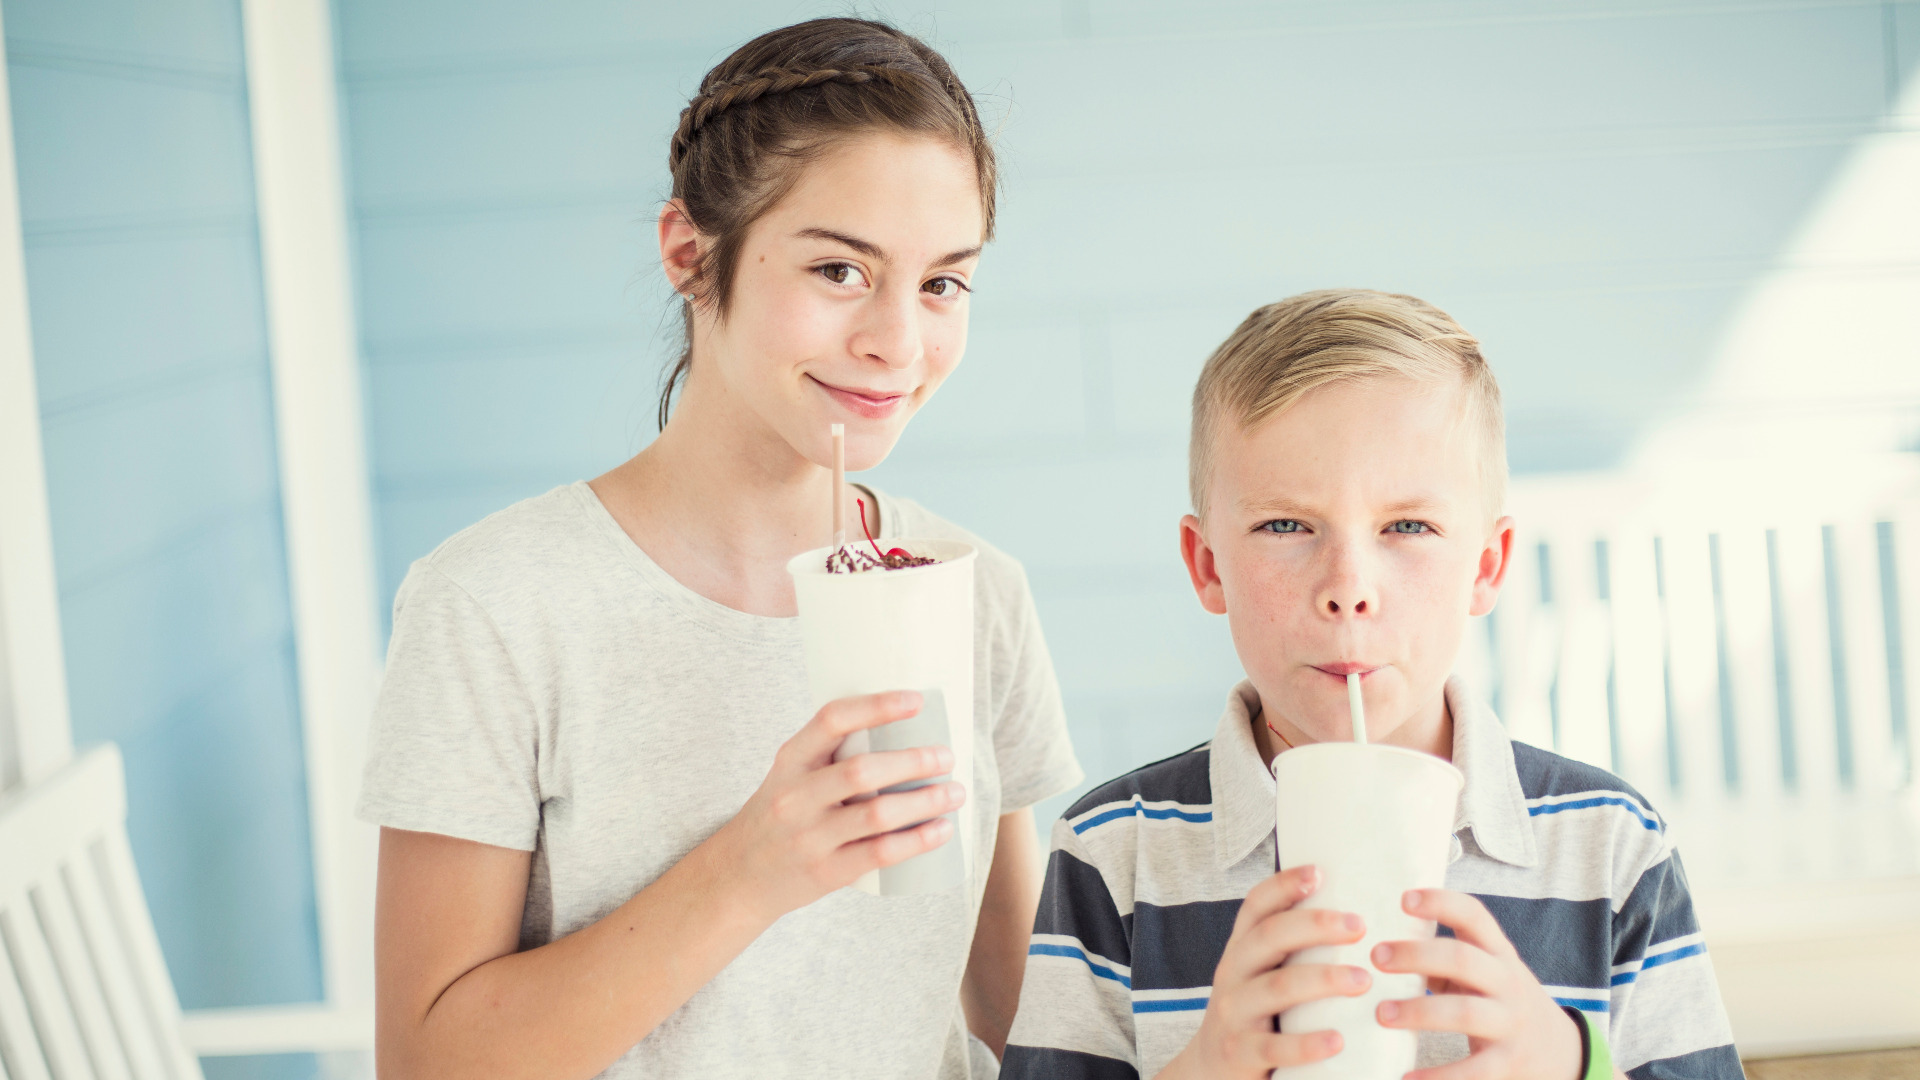 Пьет сестру друга. Дети пьют молочный коктейль. Ребенок с молочным коктейлем в руке. Ребенок пьет молочный коктейль из коробки. Мальчик с сестрой пьют коктейль и кайфуют.